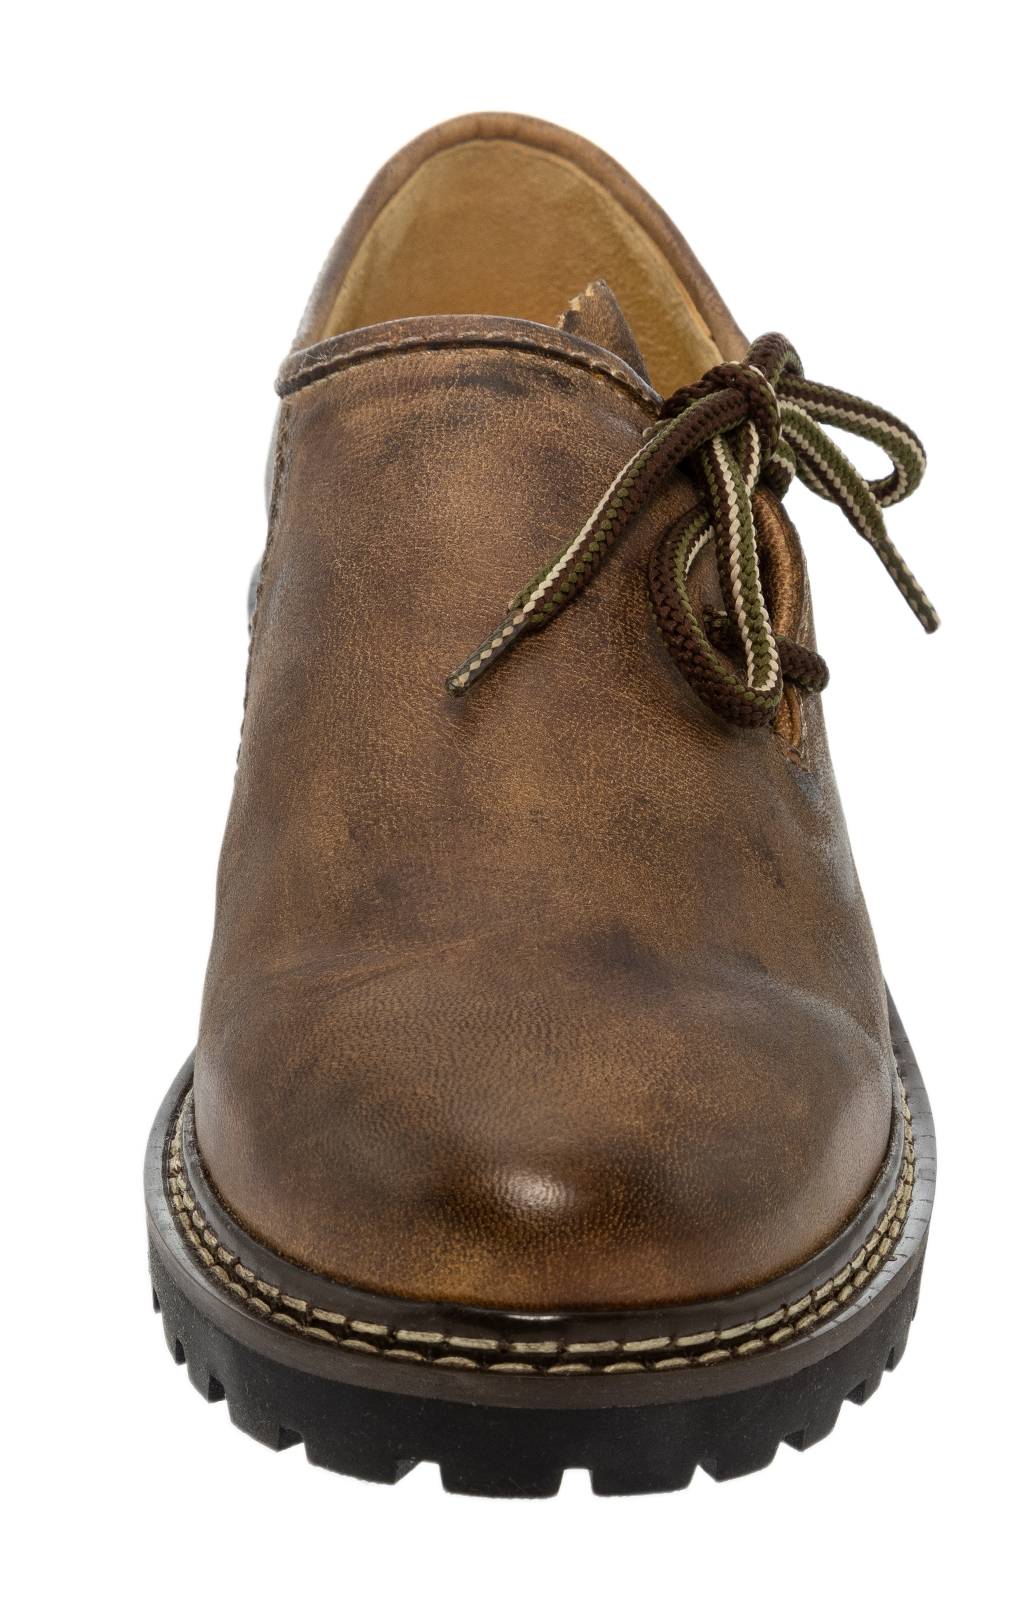 weitere Bilder von German traditional shoes 9659-7 bruin